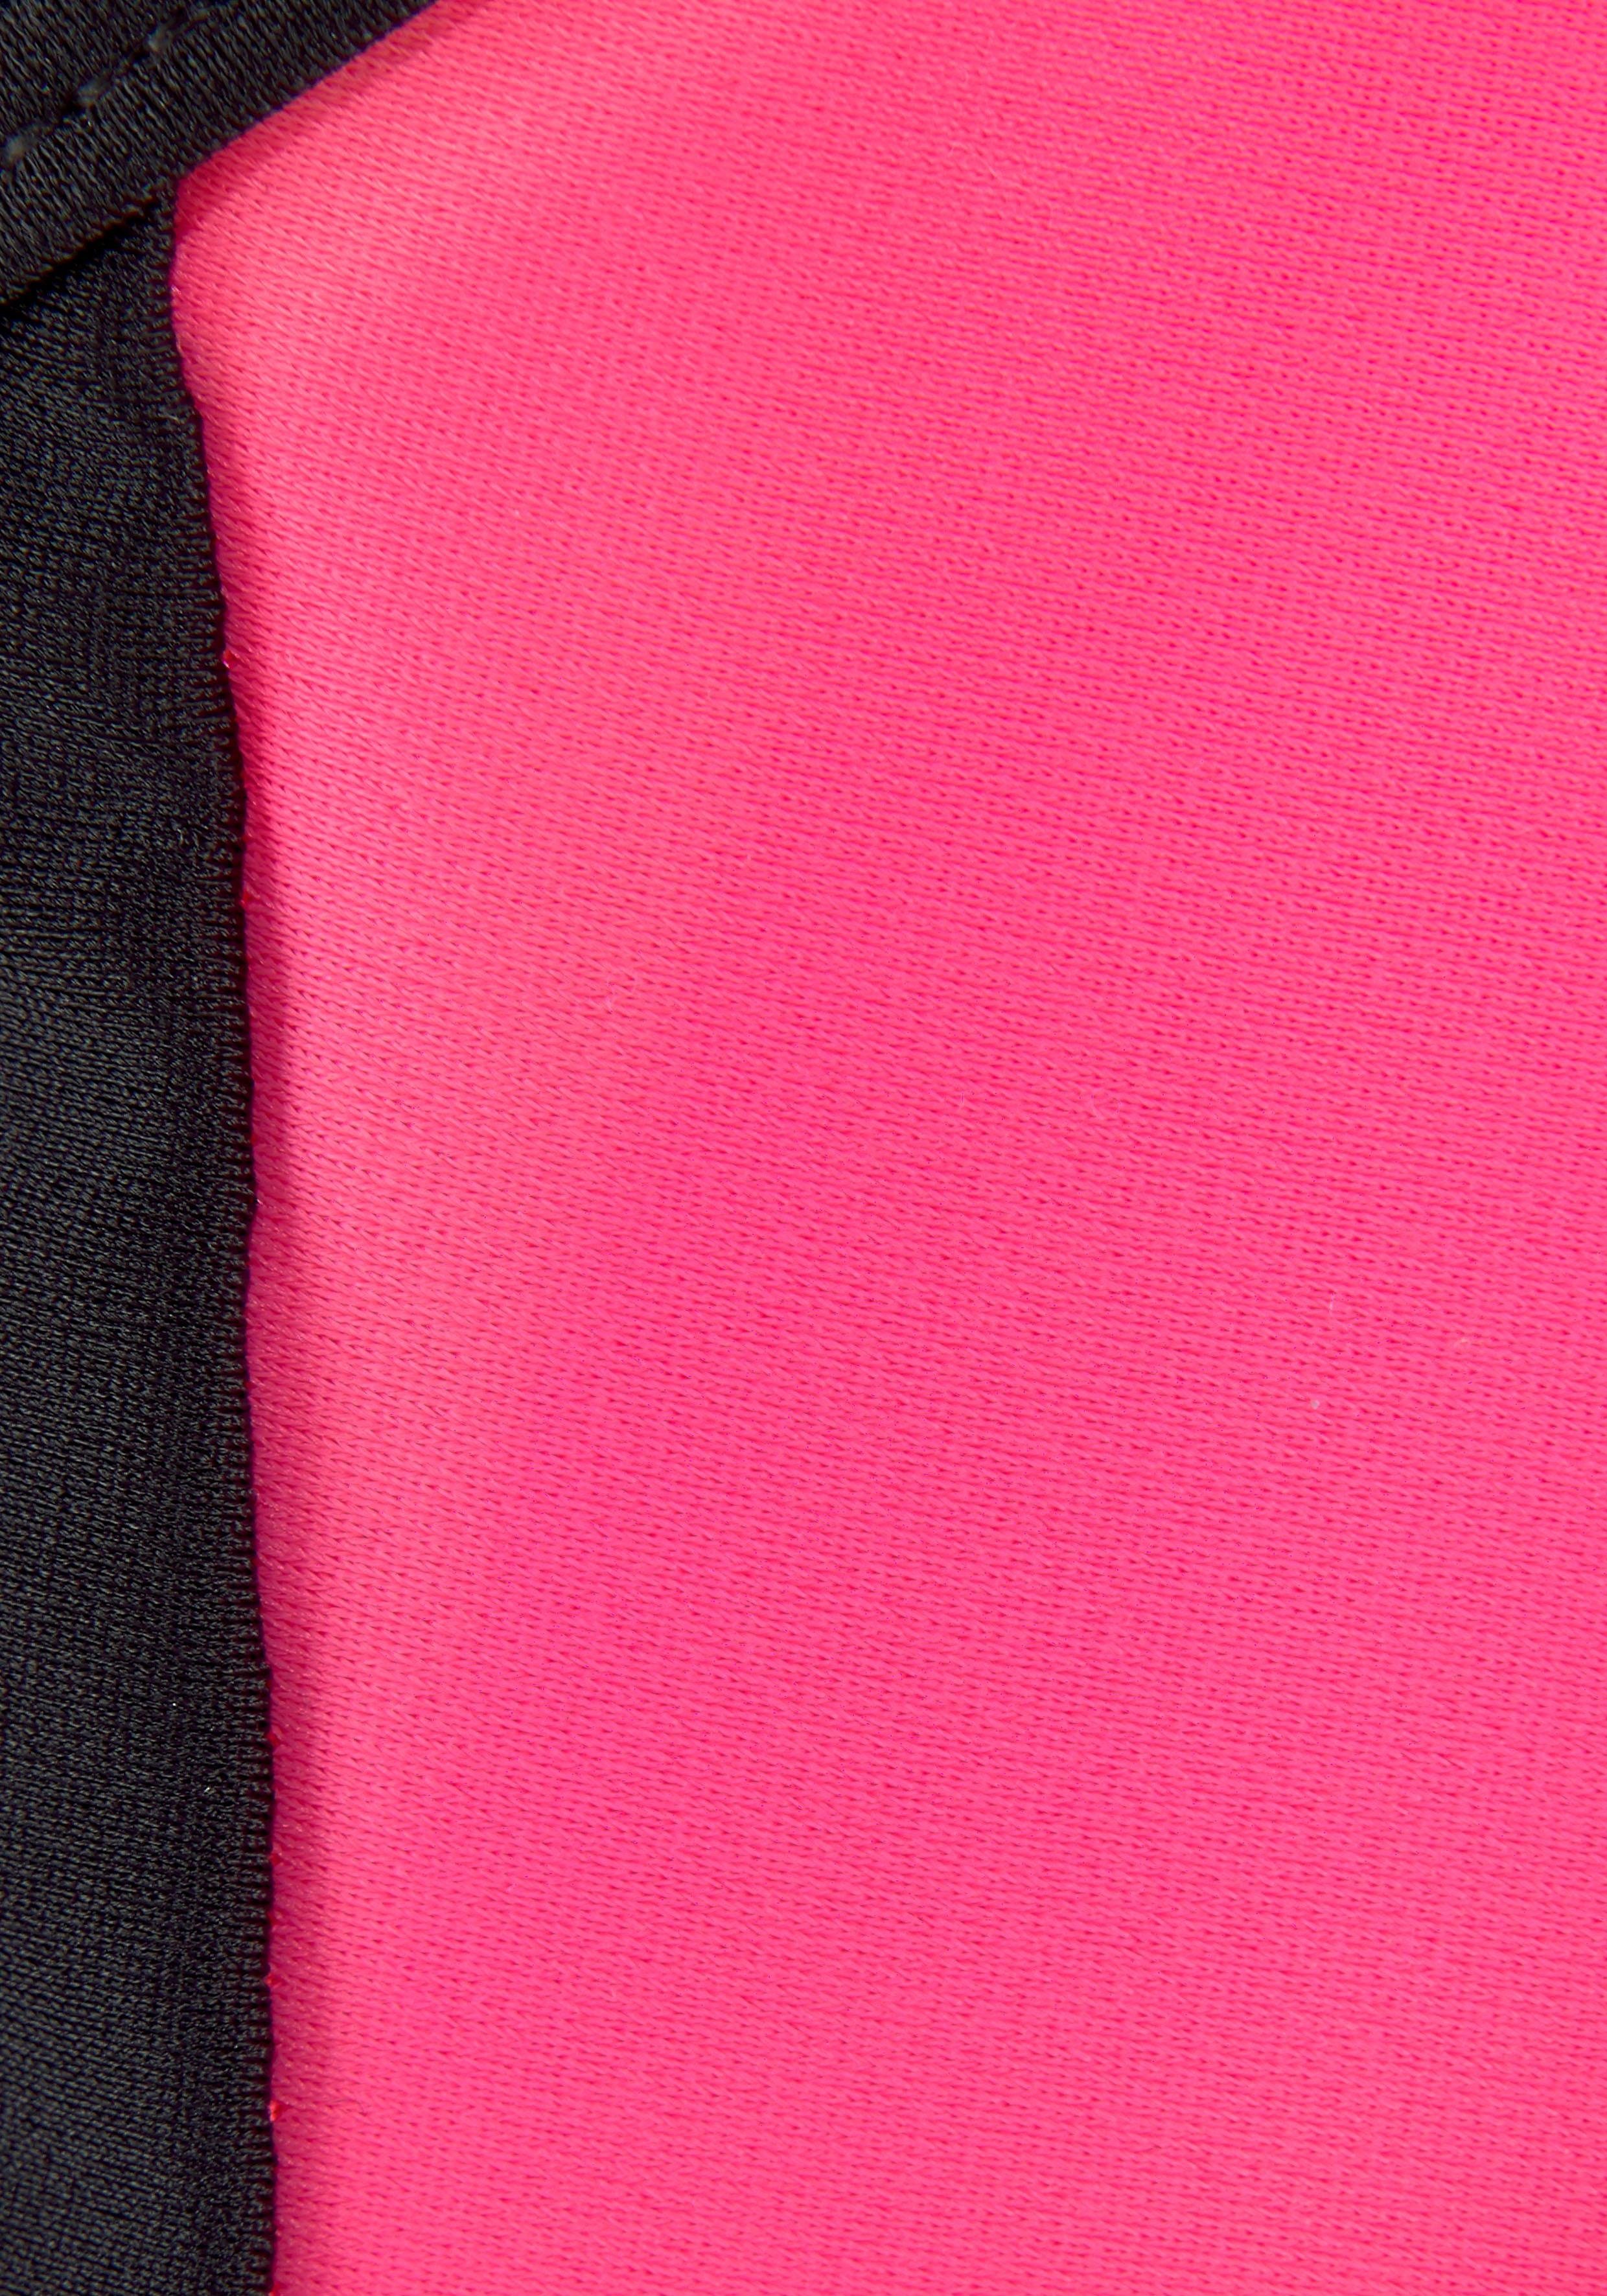 Bench. Bustier-Bikini mit gekreuzten Trägern pink-schwarz